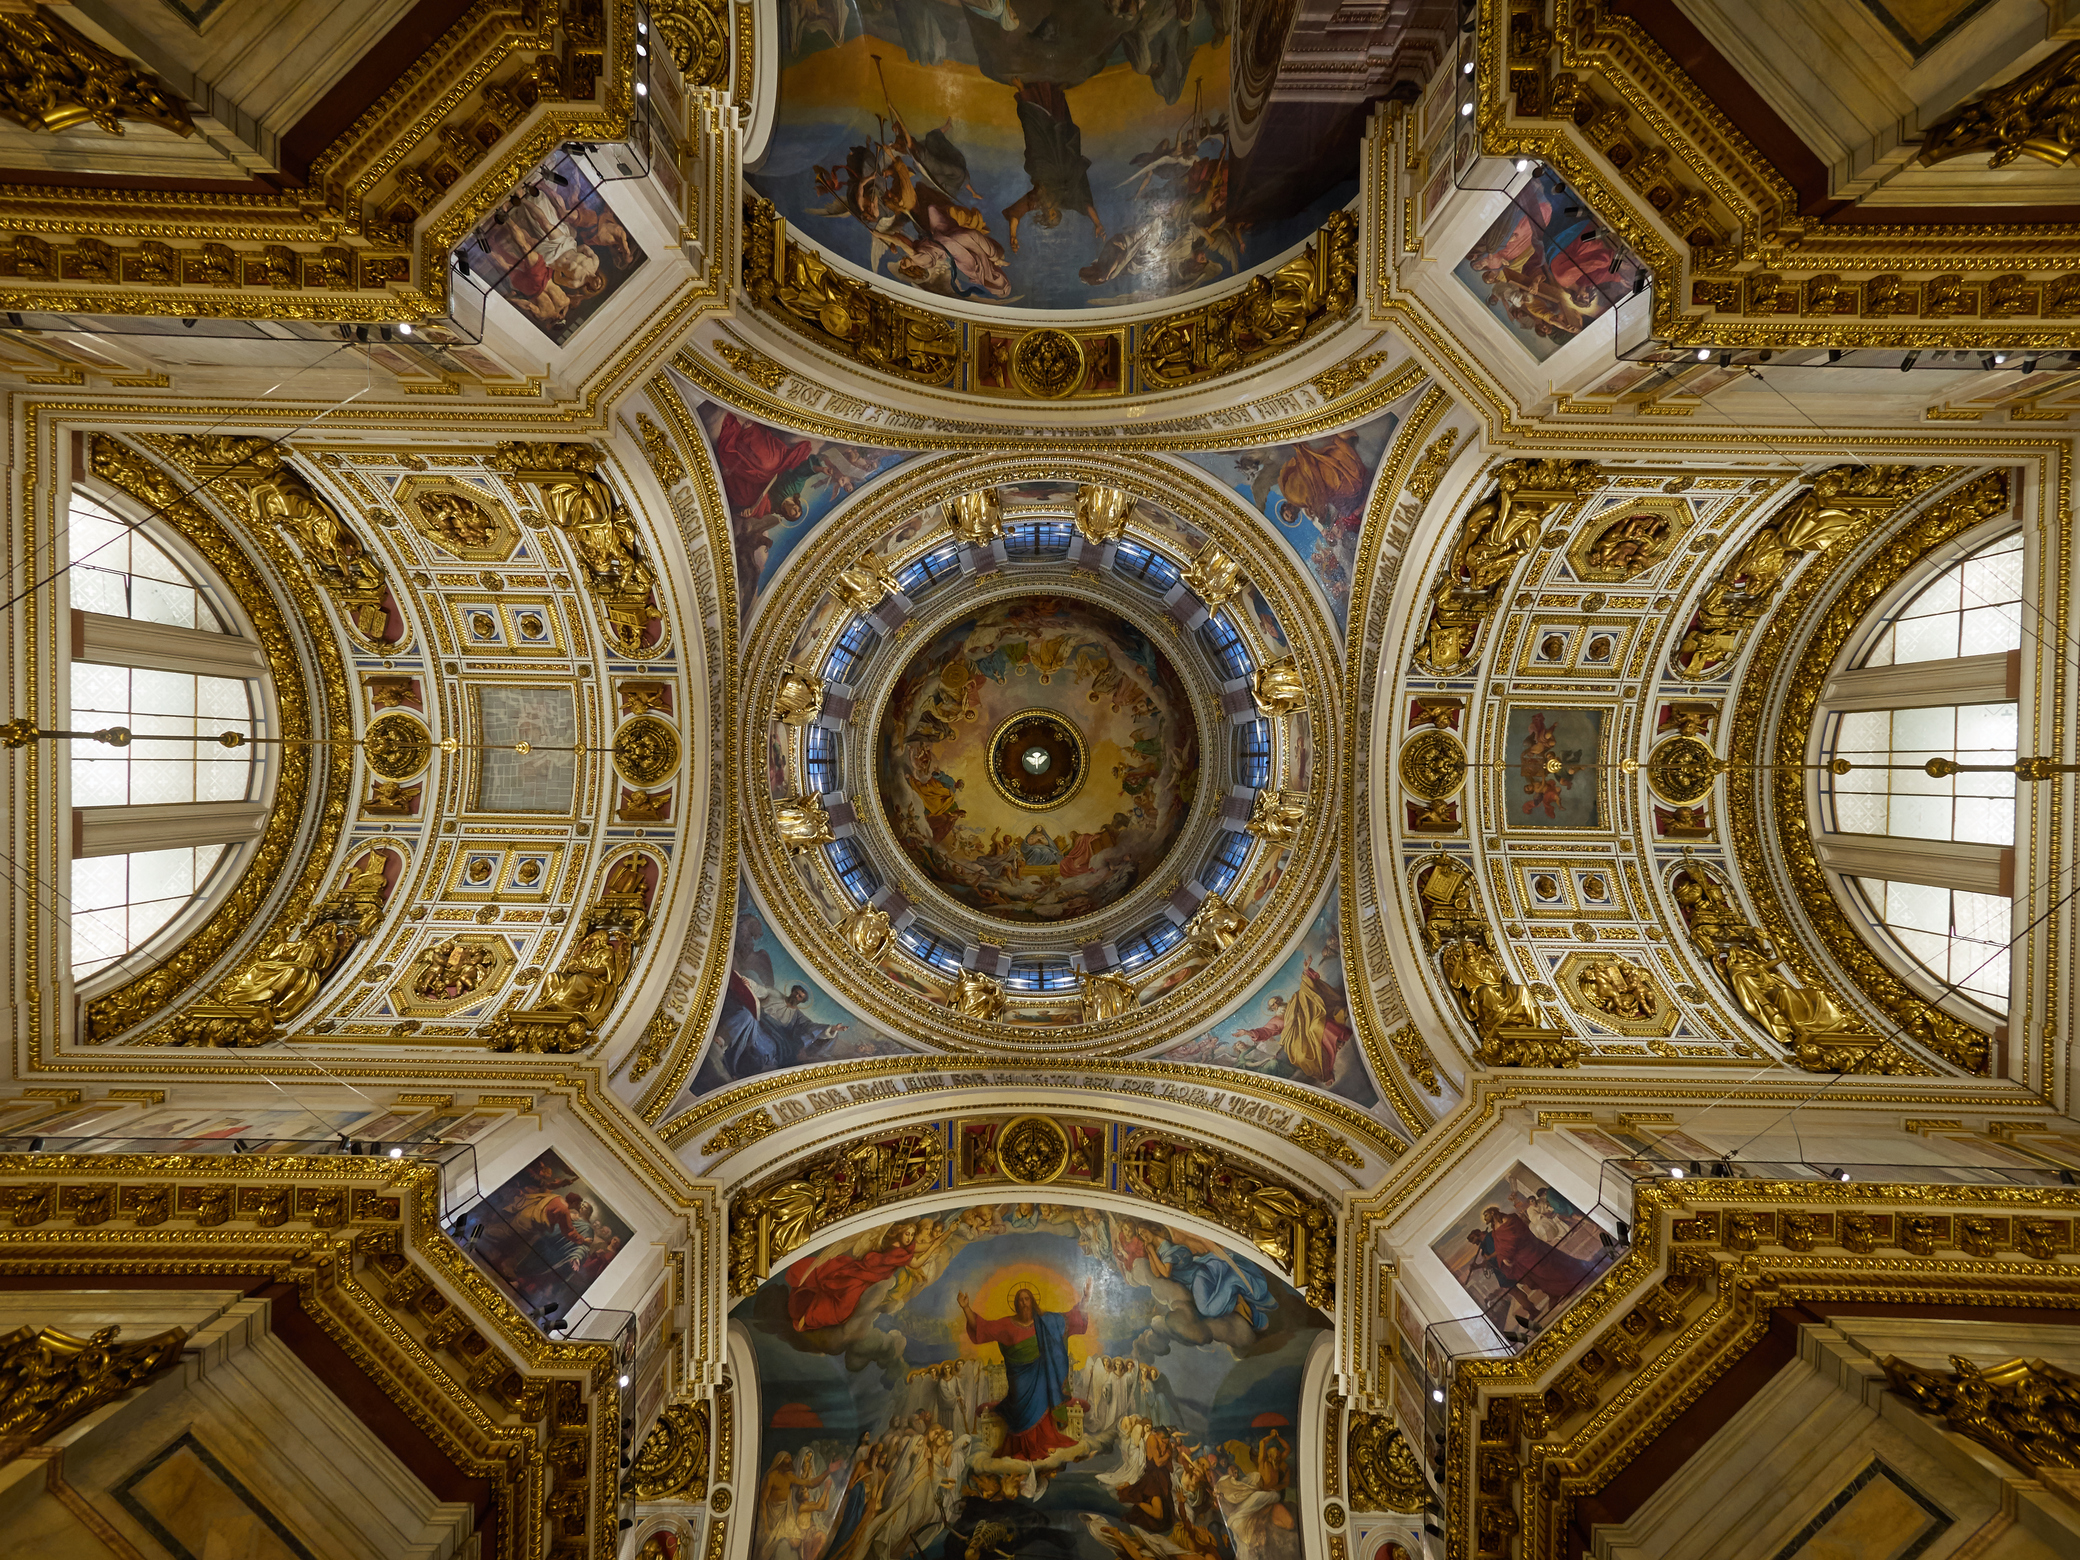 Купол Исаакиевского собора